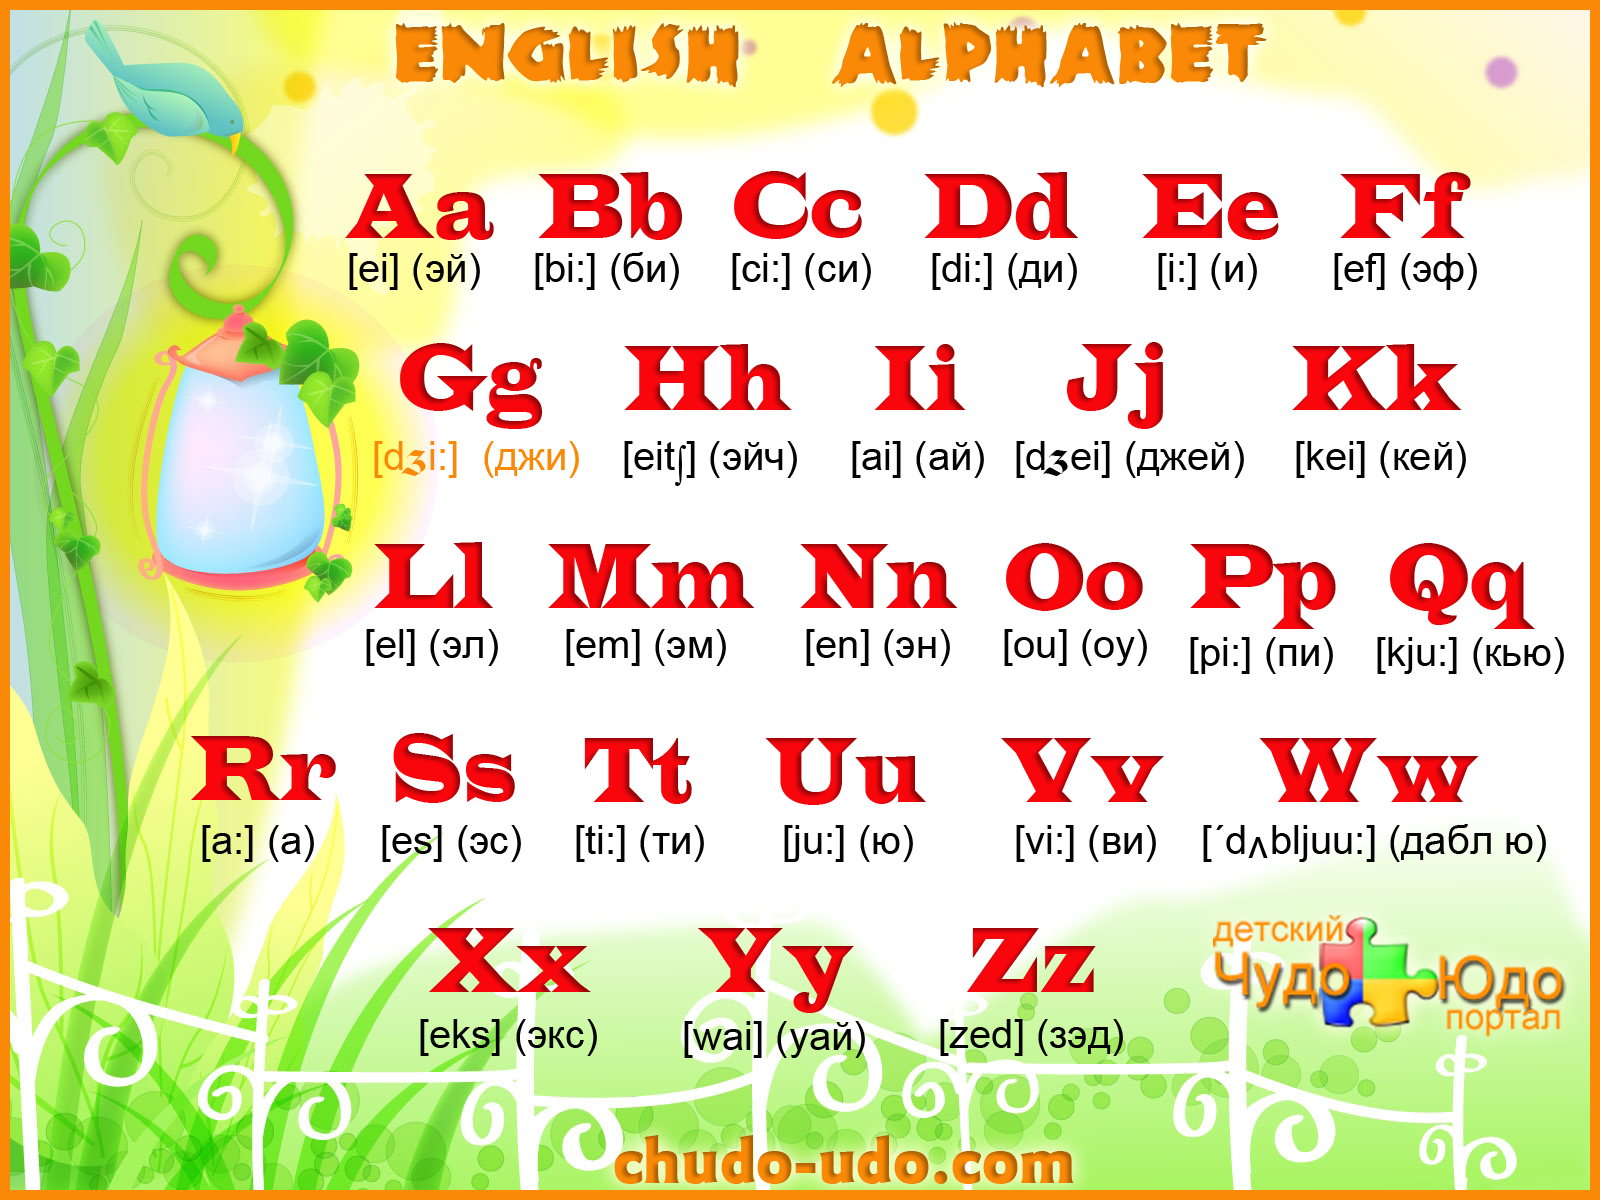 Алфавит дай повторить. Английский алфавит с транскрипцией для детей 2кл. Английский алфавит для детей произношение букв. Английский язык для детей алфавит с произношением. Английский алфавит с трансск.